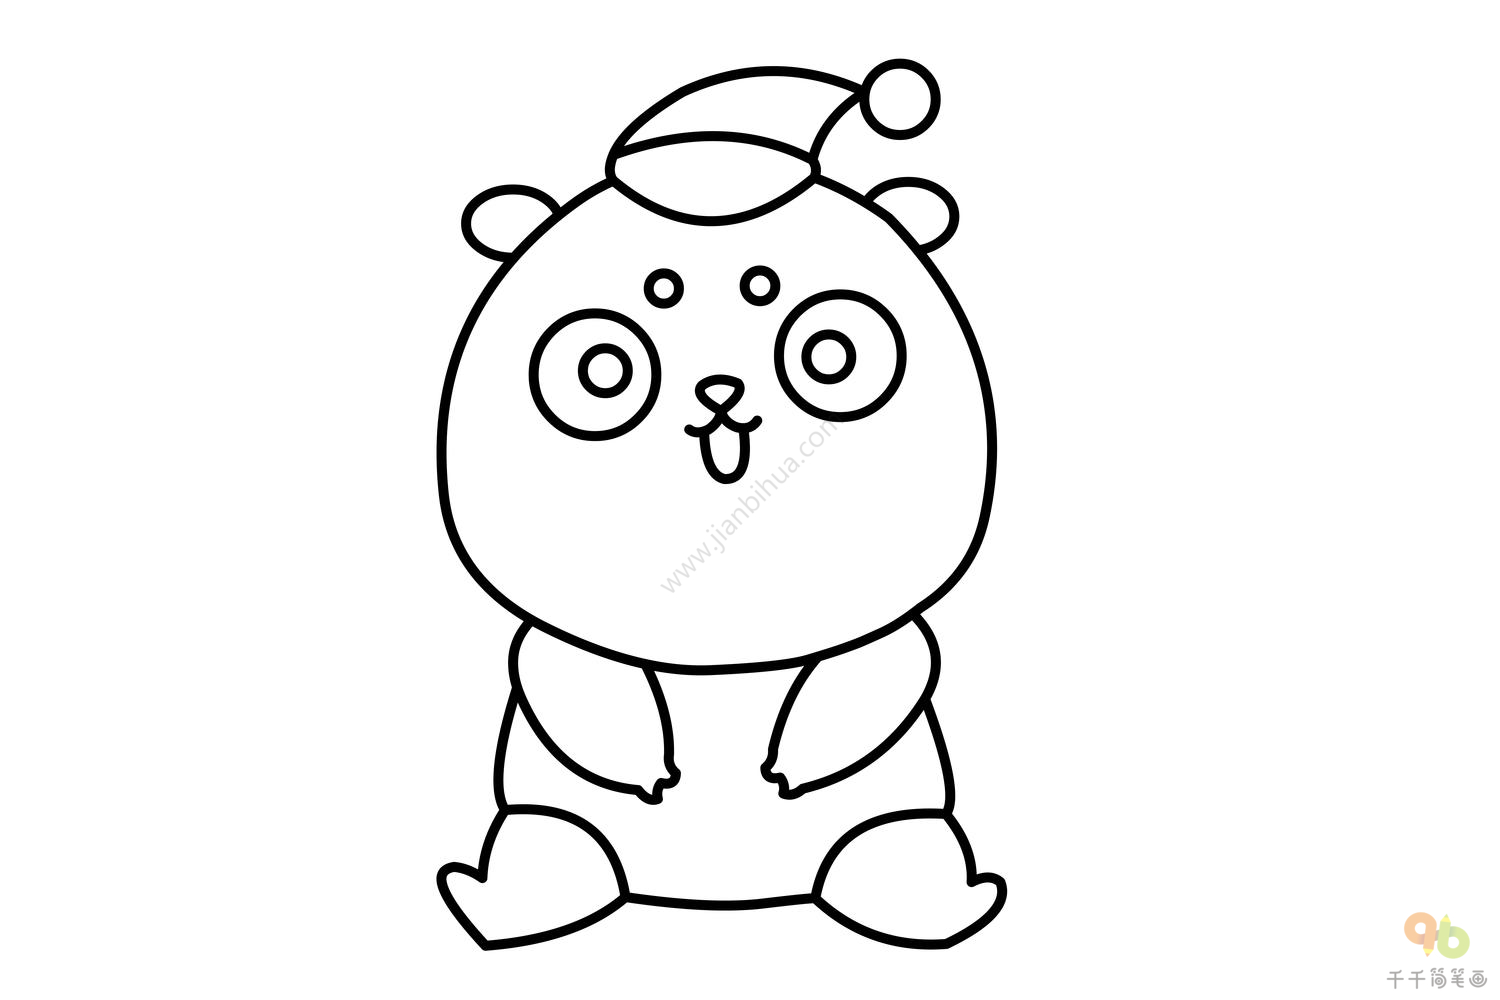 亚洲黑熊动物卡通贴画 向量例证. 插画 包括有 图象, 图画, 自然, 敲打, 毛皮, 居住, 敌意, 生物 - 236415416